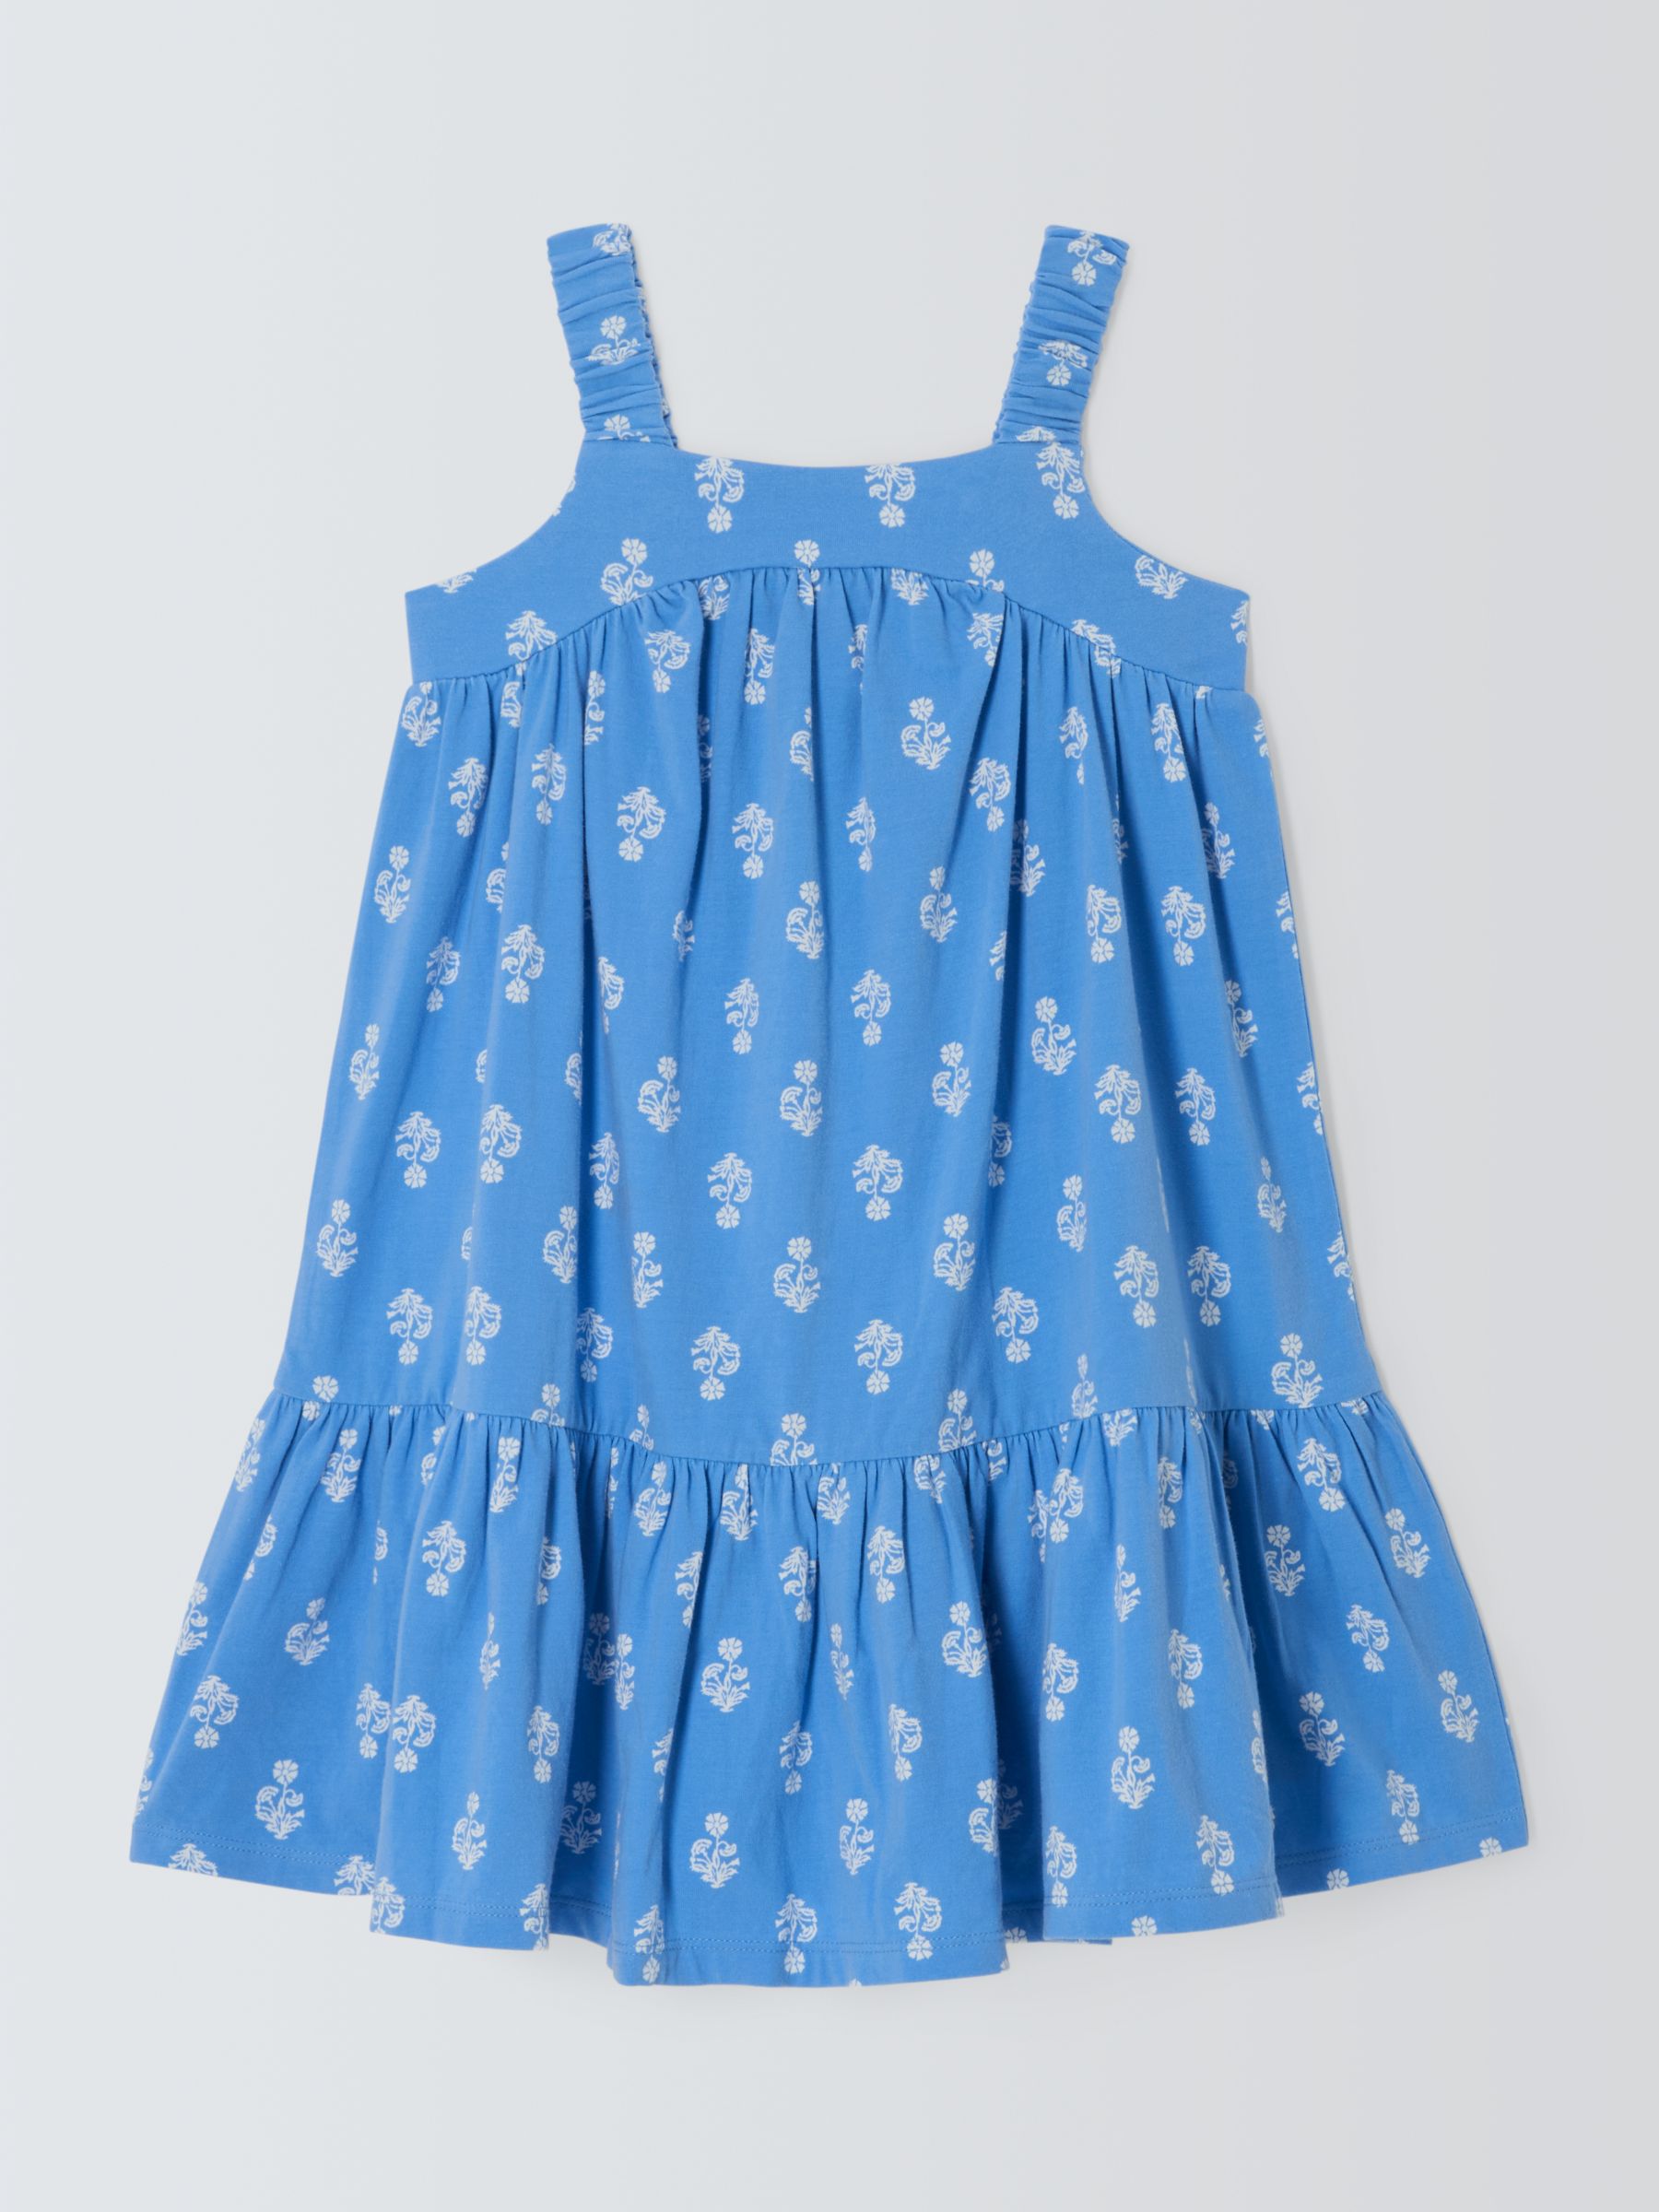 John Lewis Kids' Flower Jersey Swing Dress, Blue, 3 years